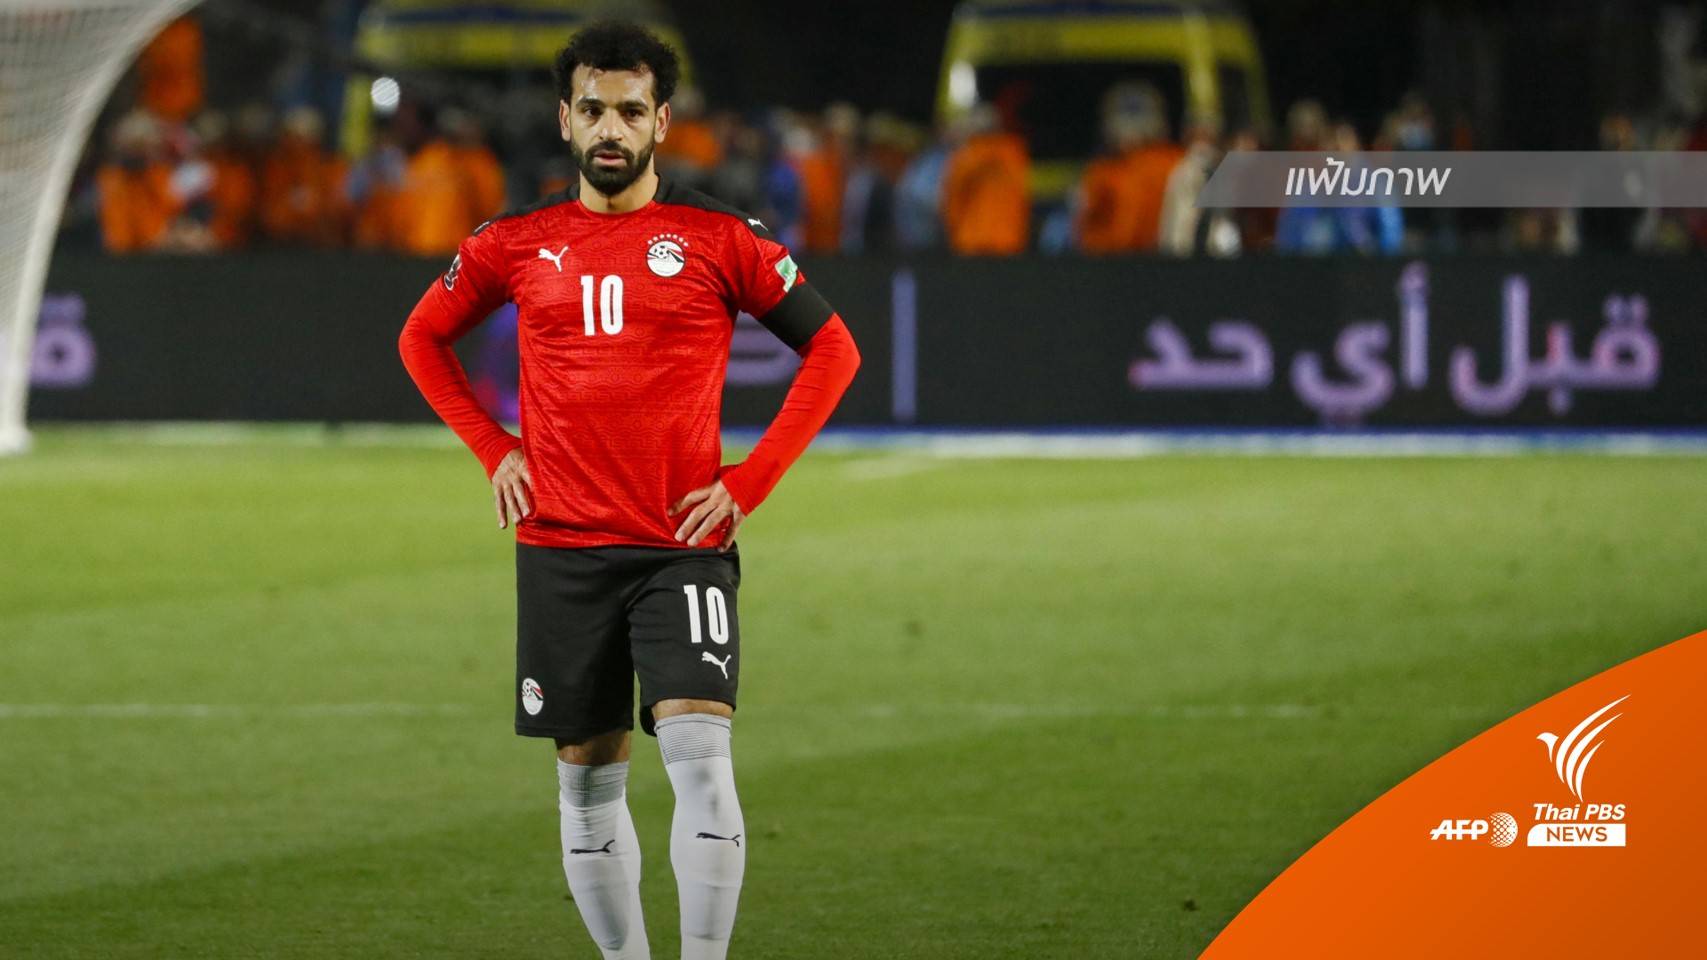 "อียิปต์" อดไปฟุตบอลโลก 2022  หลังพ่ายดวลจุดโทษ "เซเนกัล" 